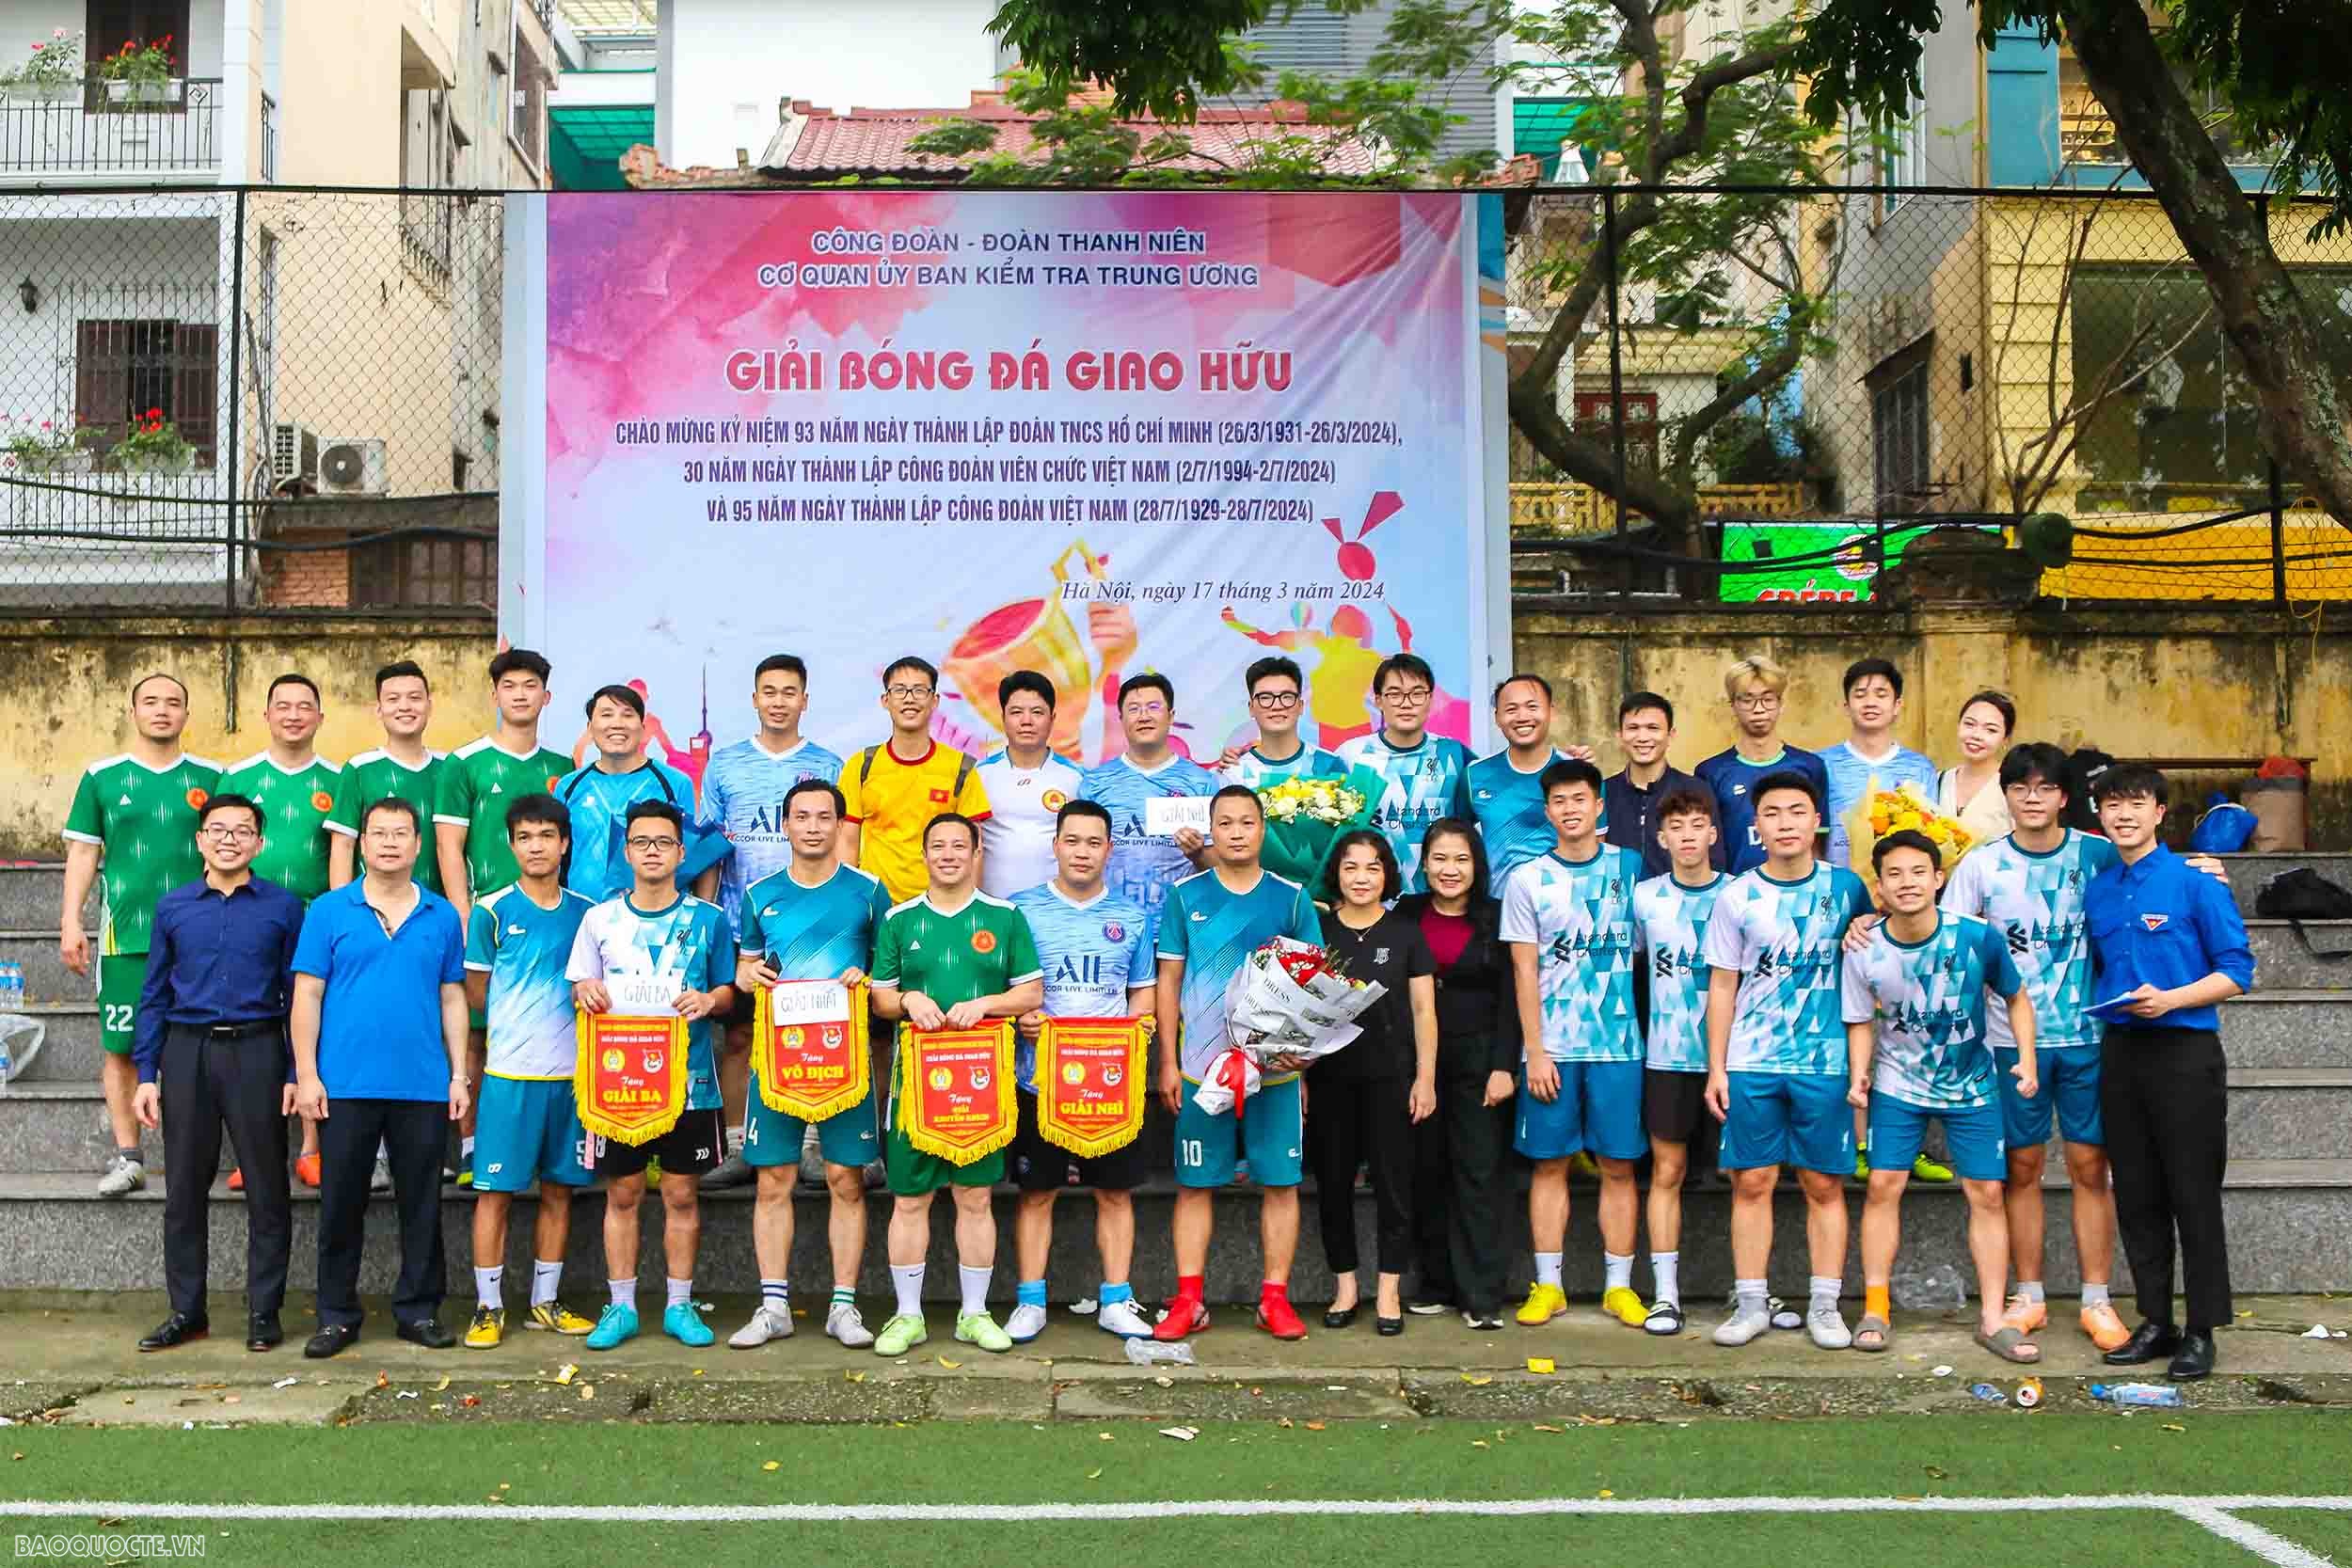 Thanh niên Ngoại giao tham gia Giải bóng đá giao hữu của Uỷ ban kiểm tra trung ương